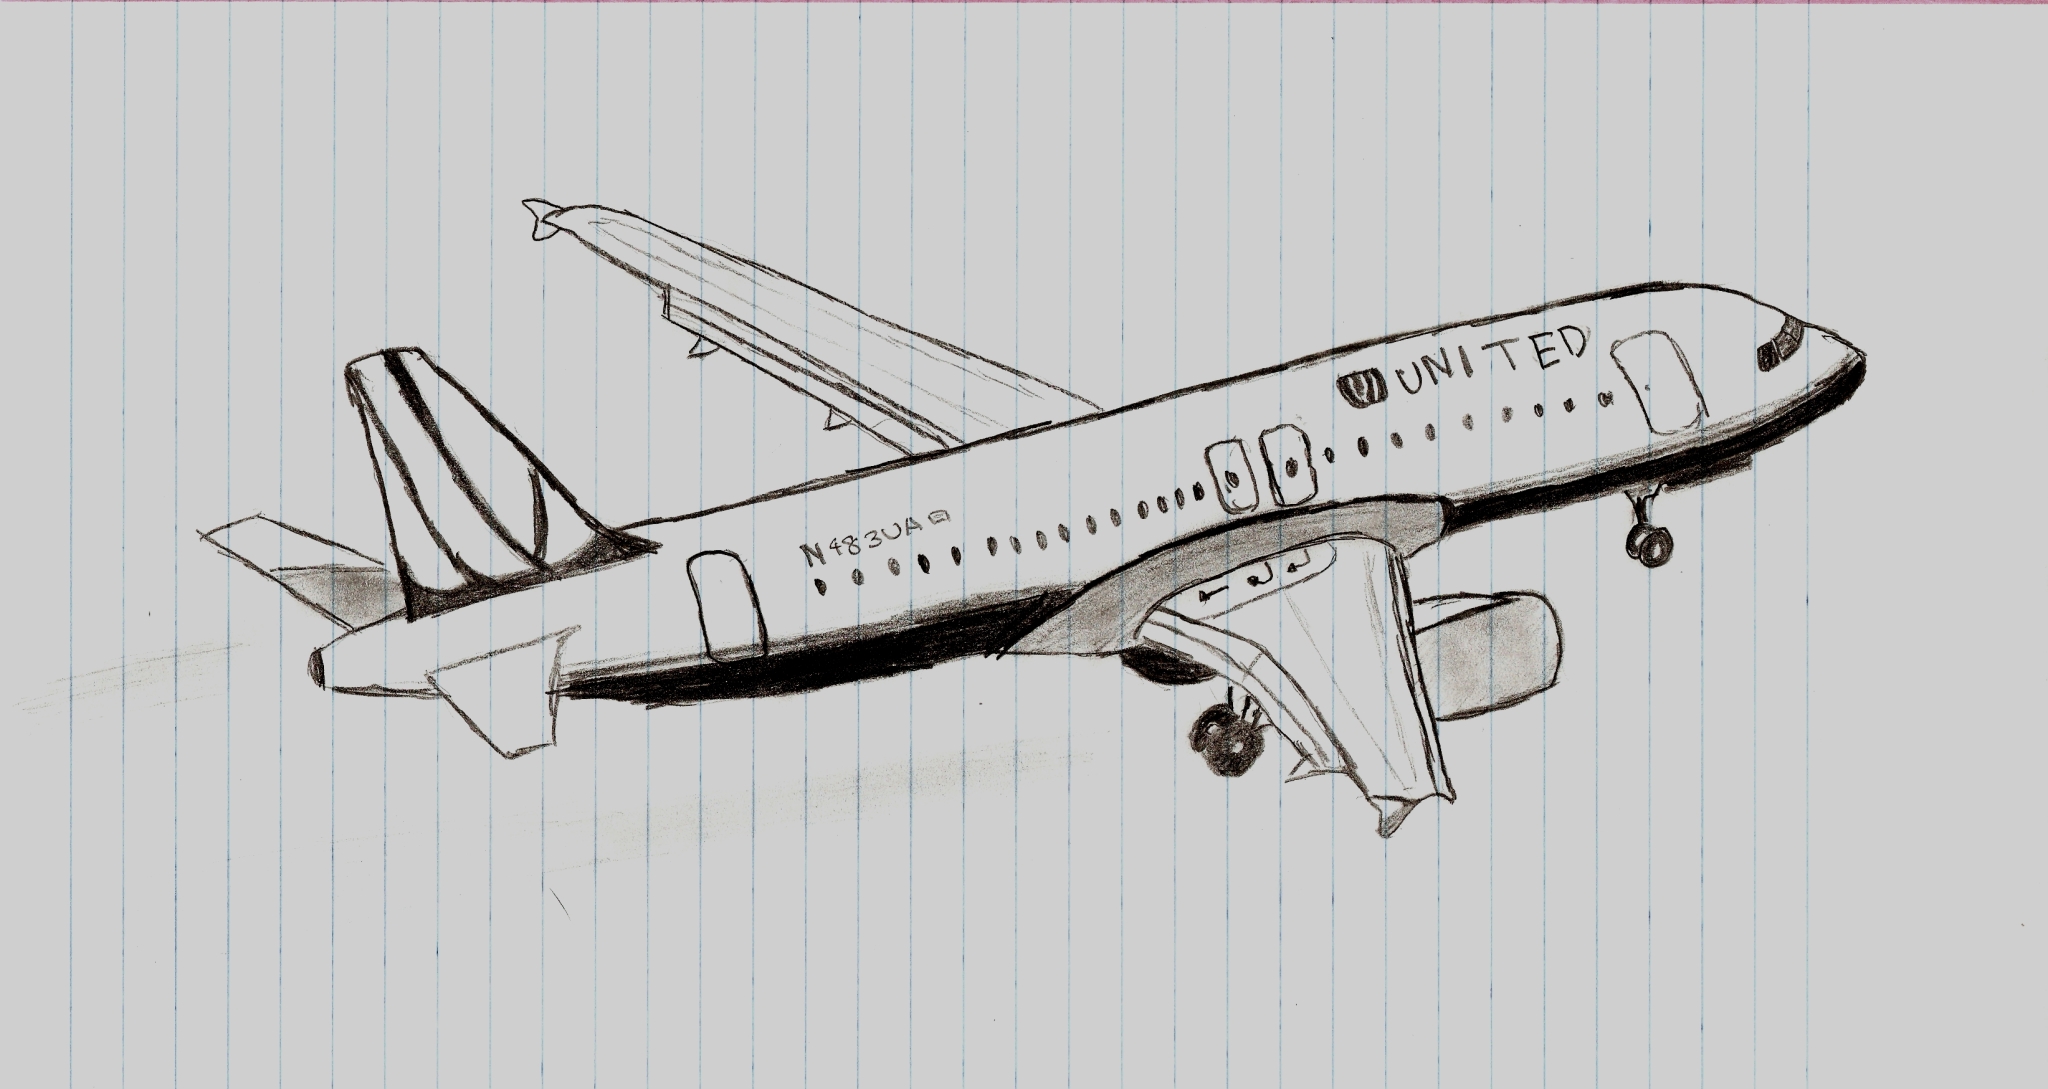 Free Plane Drawing, Download Free Plane Drawing png images, Free ...